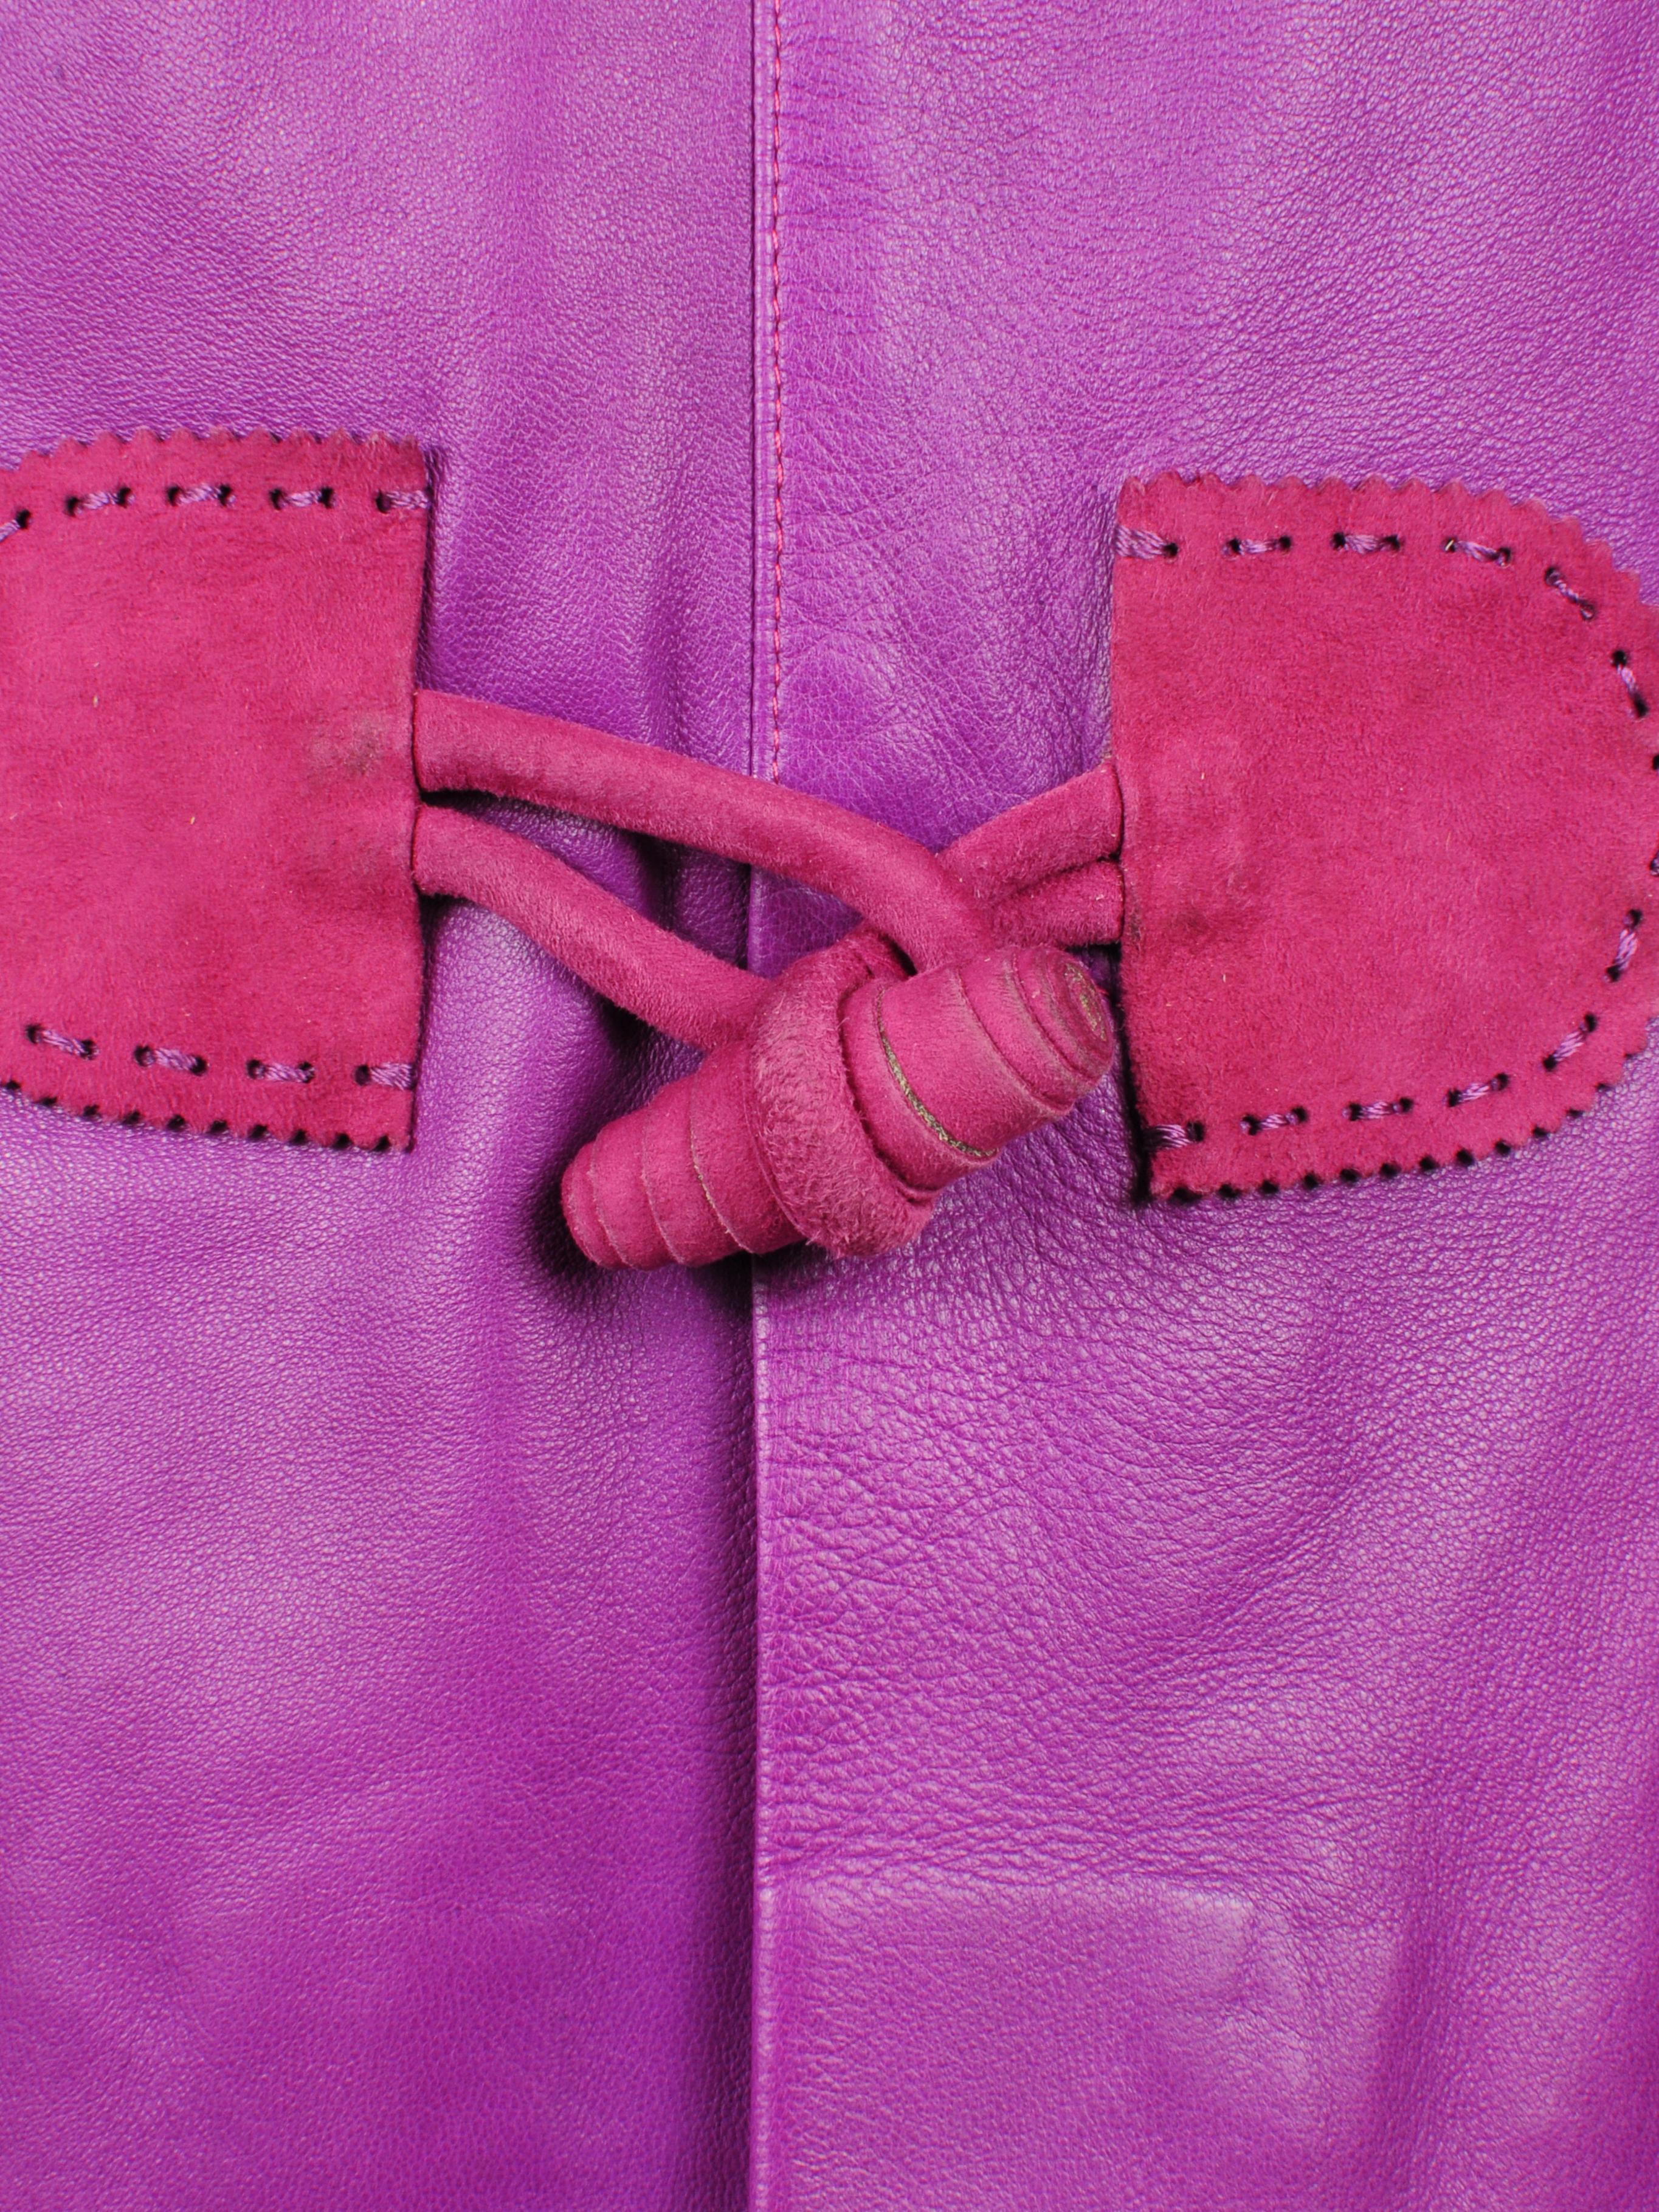 Elizabeth Wessel Monte Carlo Leather and Knitwear Purple Blazer 1980s For Sale 7